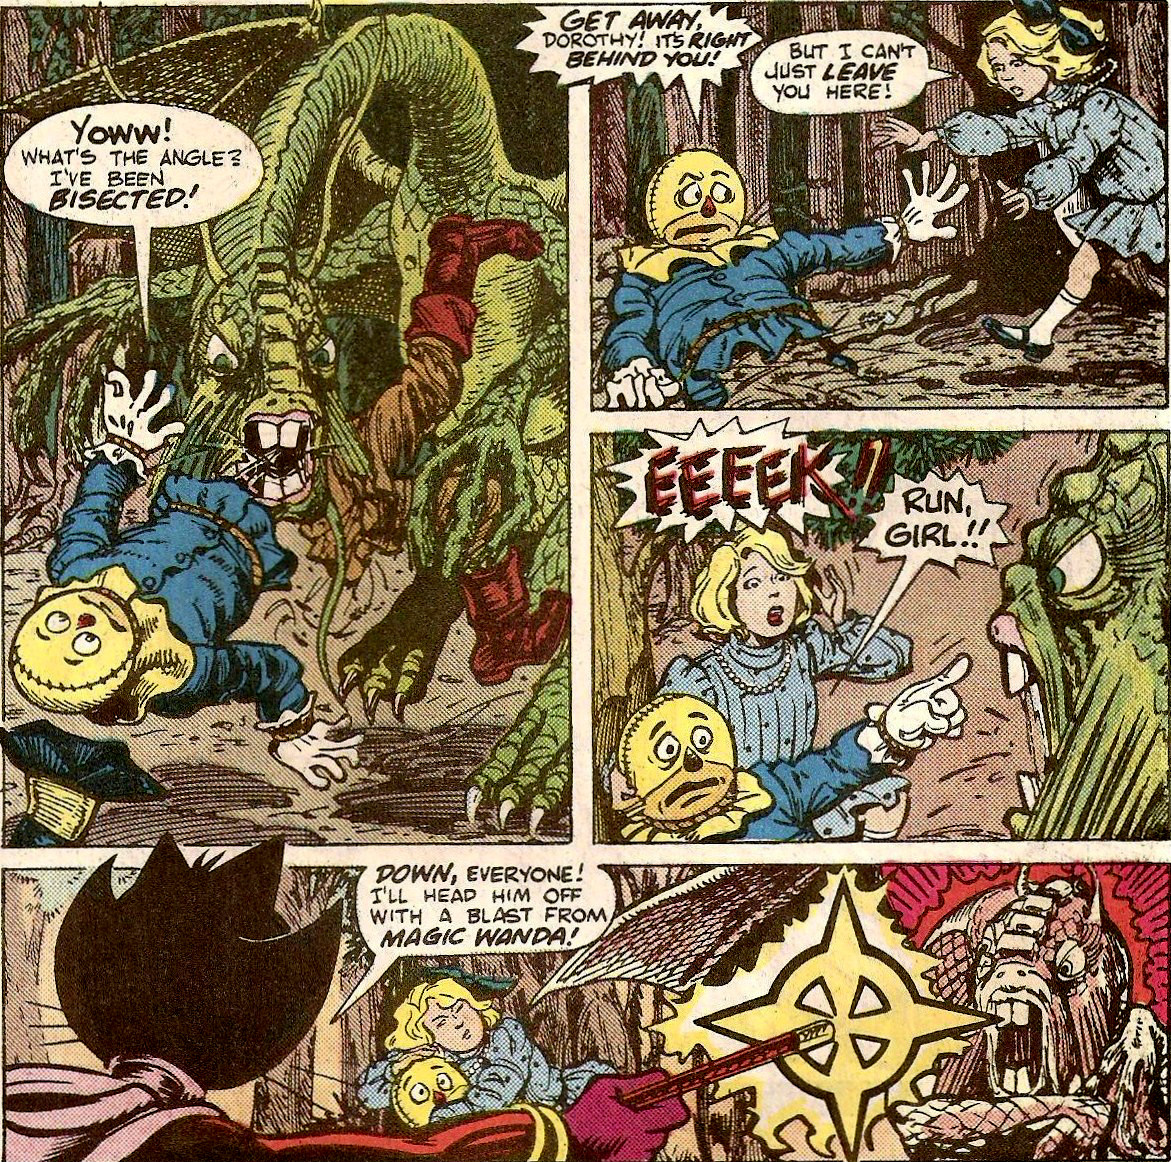 From The Oz - Wonderland War #3 (1986)